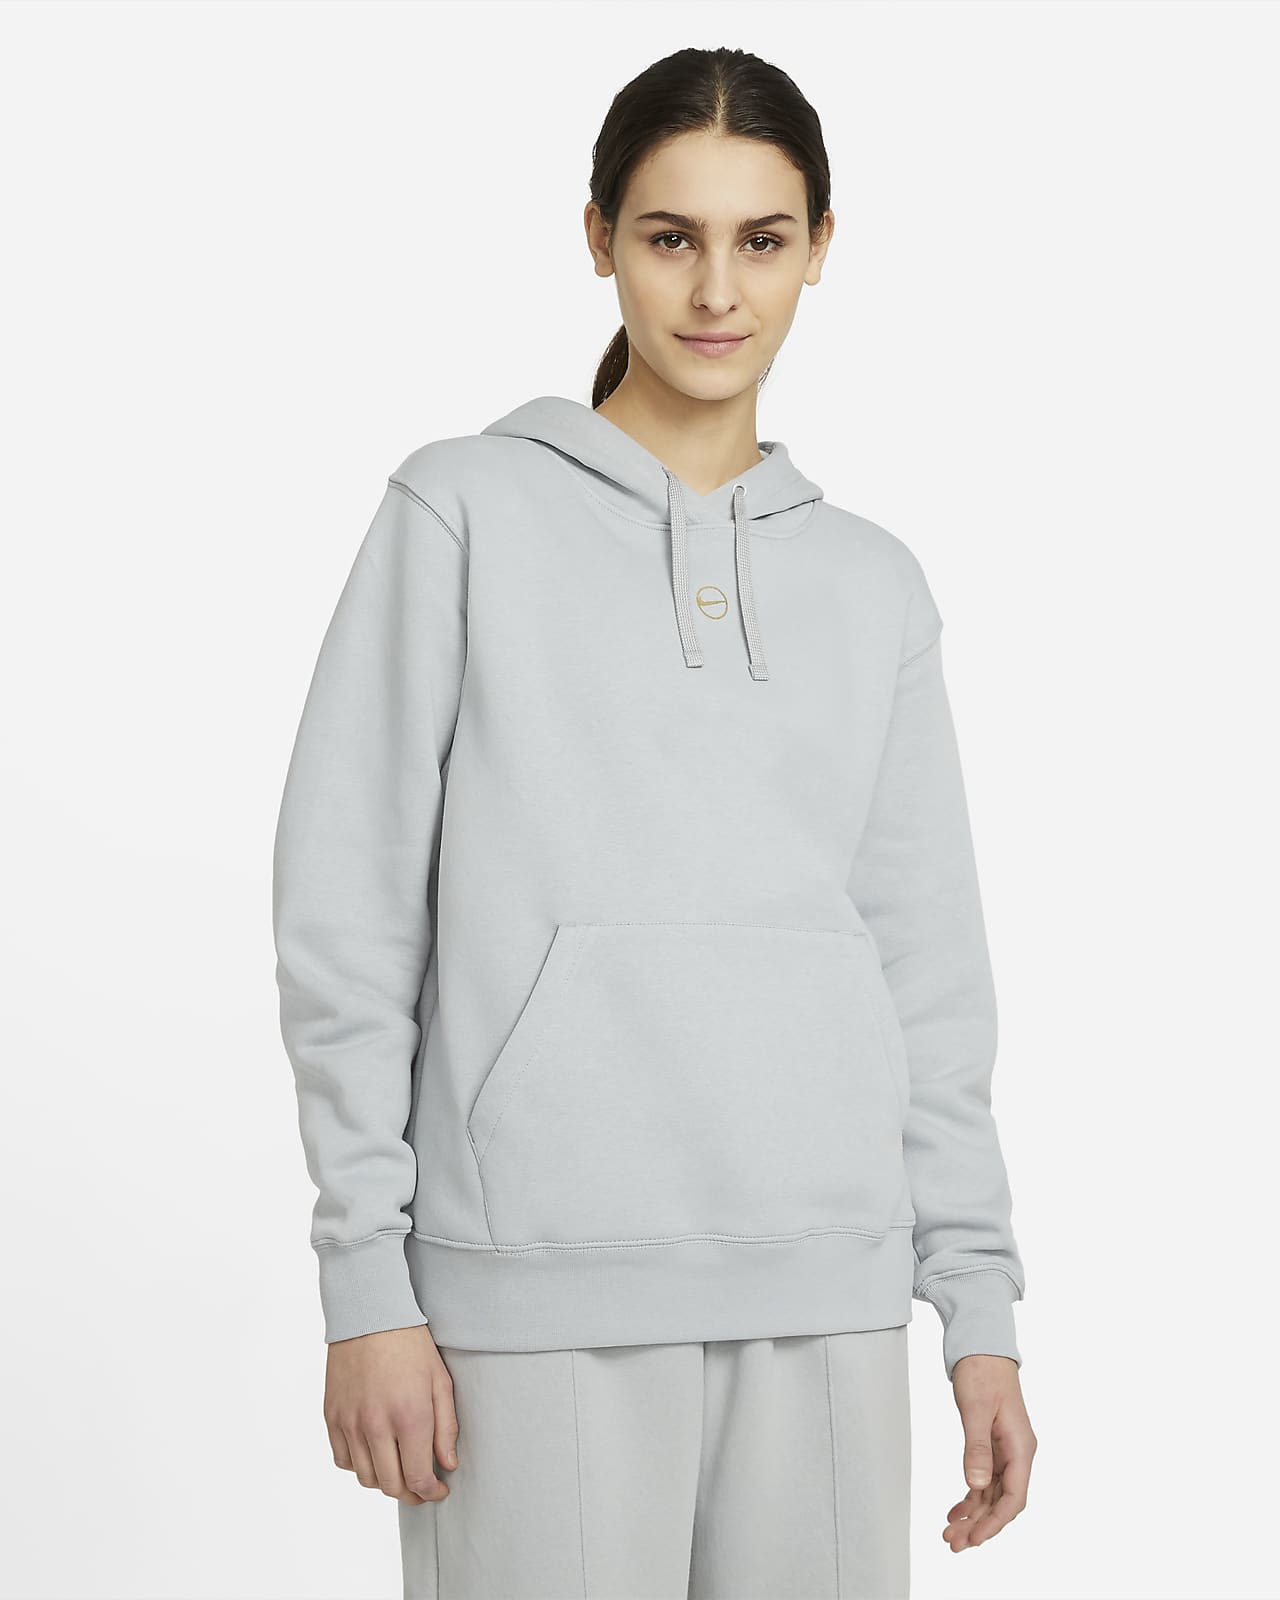 grey nike pullover hoodie women's